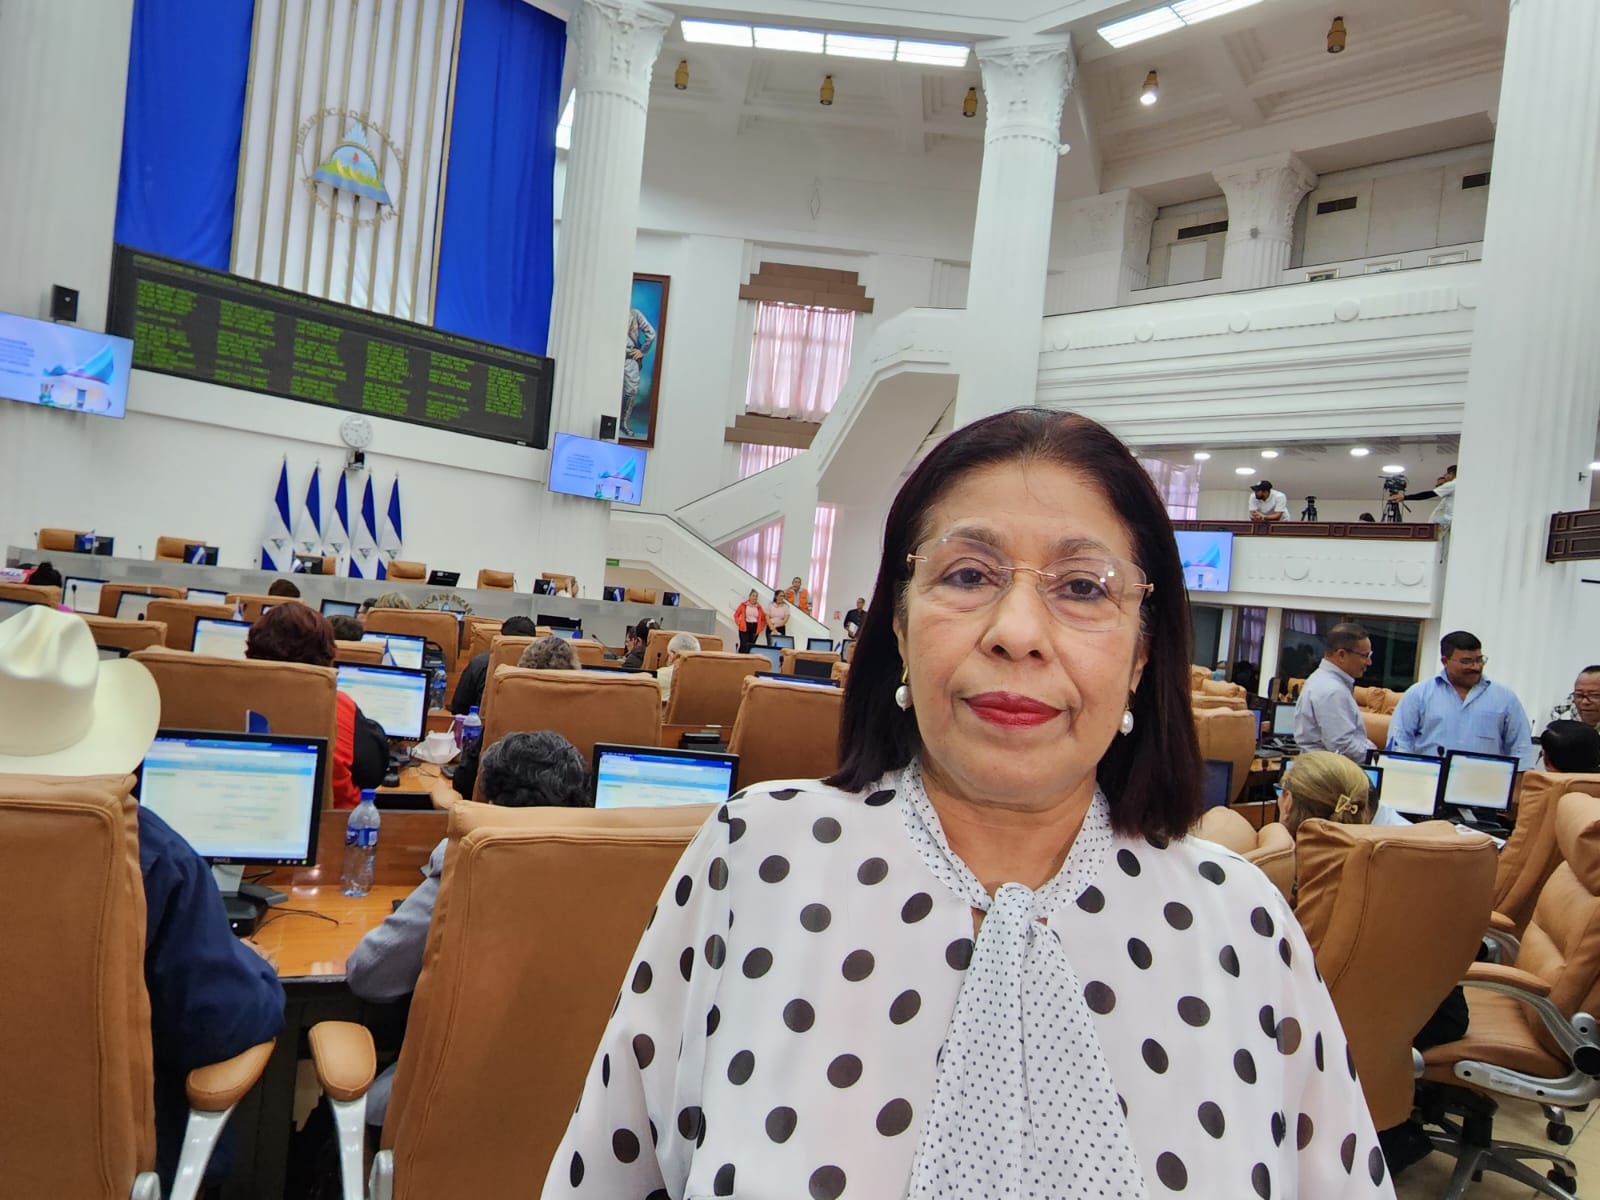 Sentencia a Traidores a la Patria apegada al marco jurídico, afirma diputada Managua. Radio La Primerísima